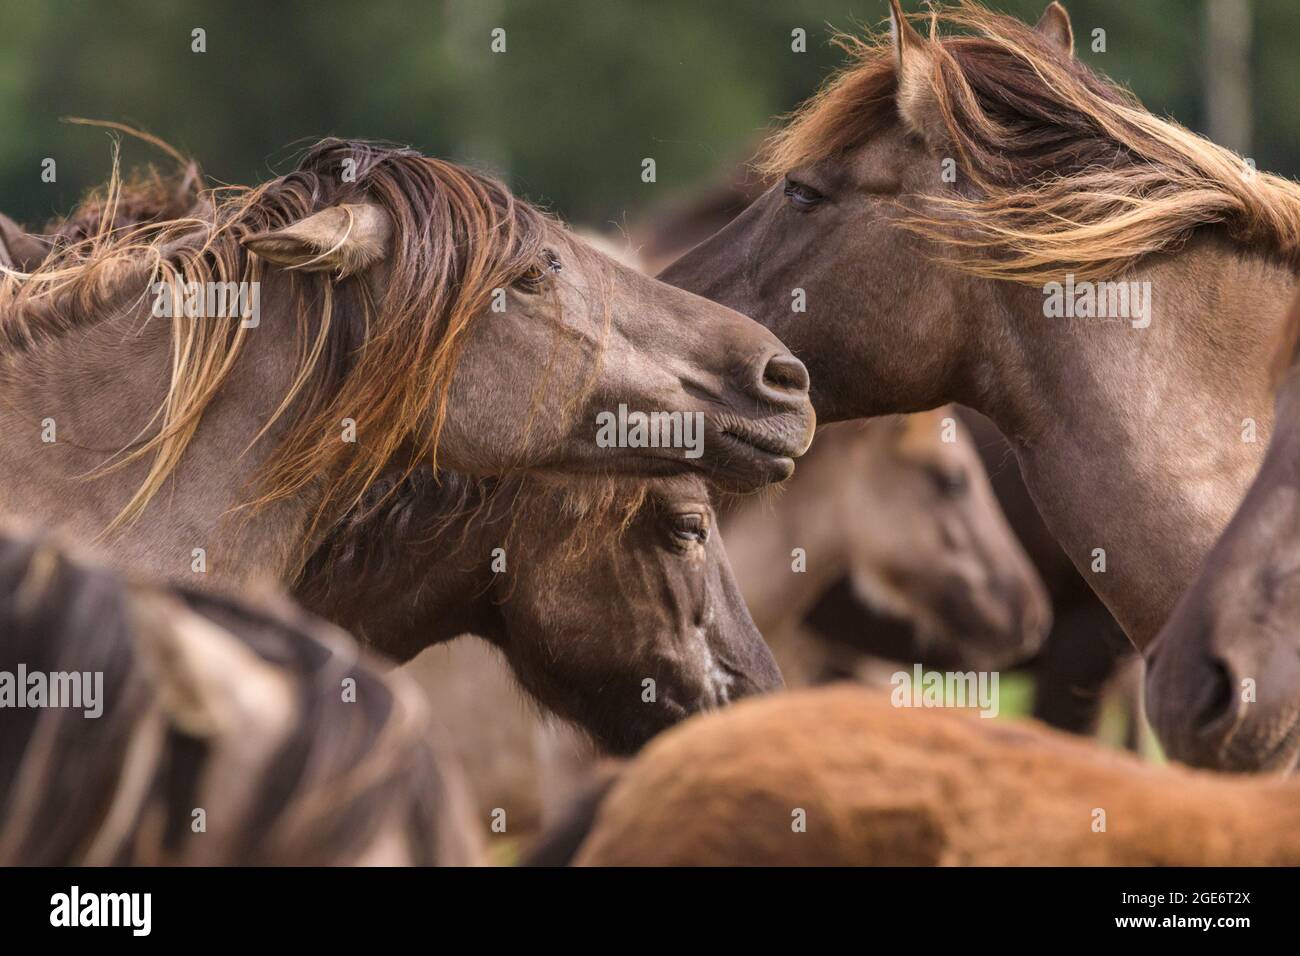 Gros plan, les poneys sauvages de Dülmen (également appelés les Dülmener ou les Duelmen), rare race semi-sauvage dans le Muensterland, Allemagne Banque D'Images